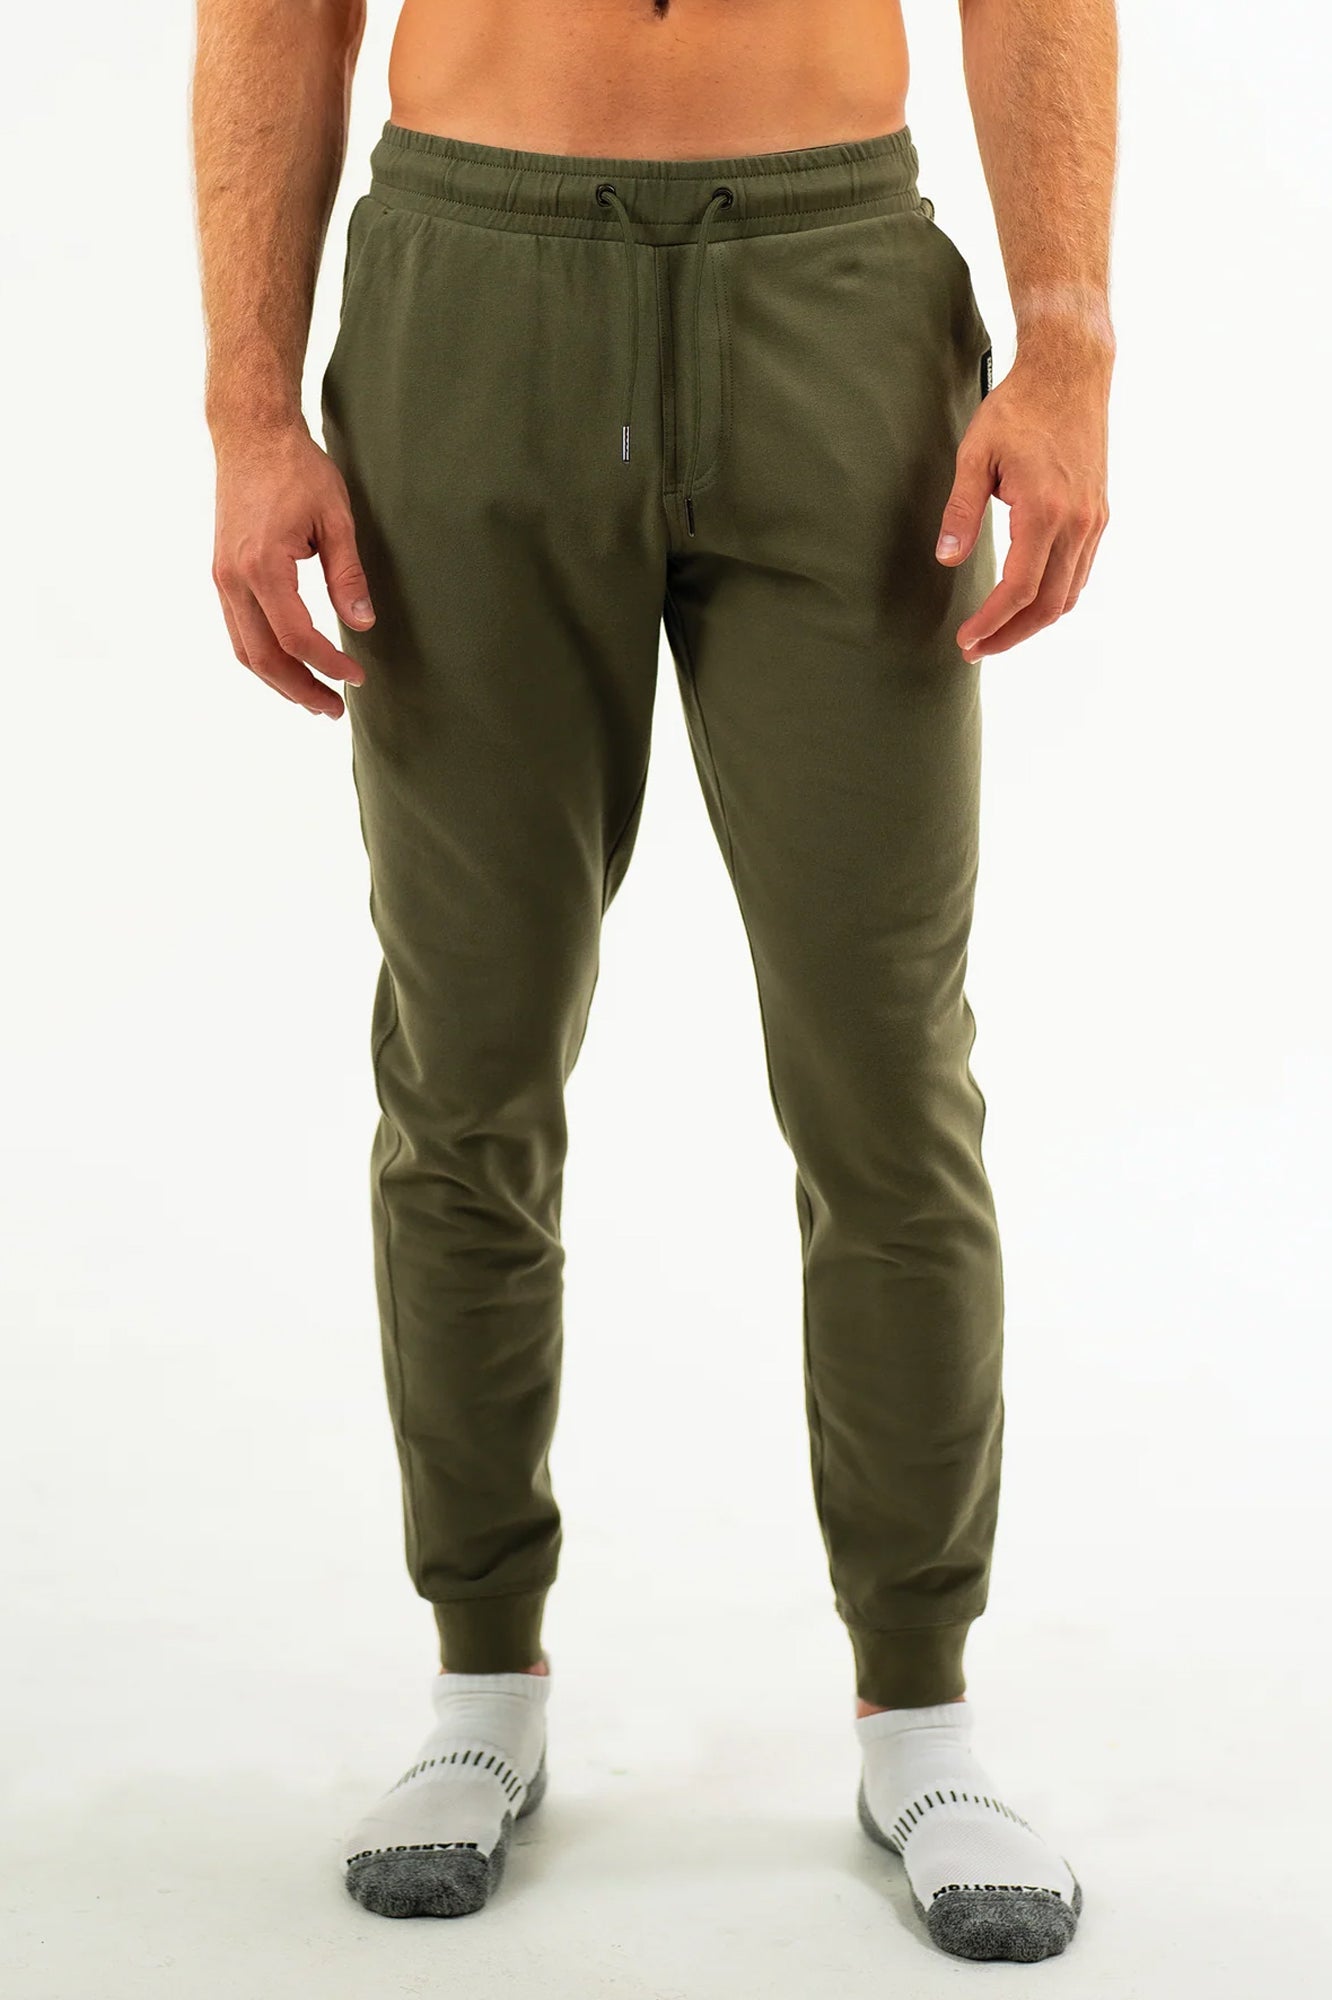 Men's Army Green Jogger Pant